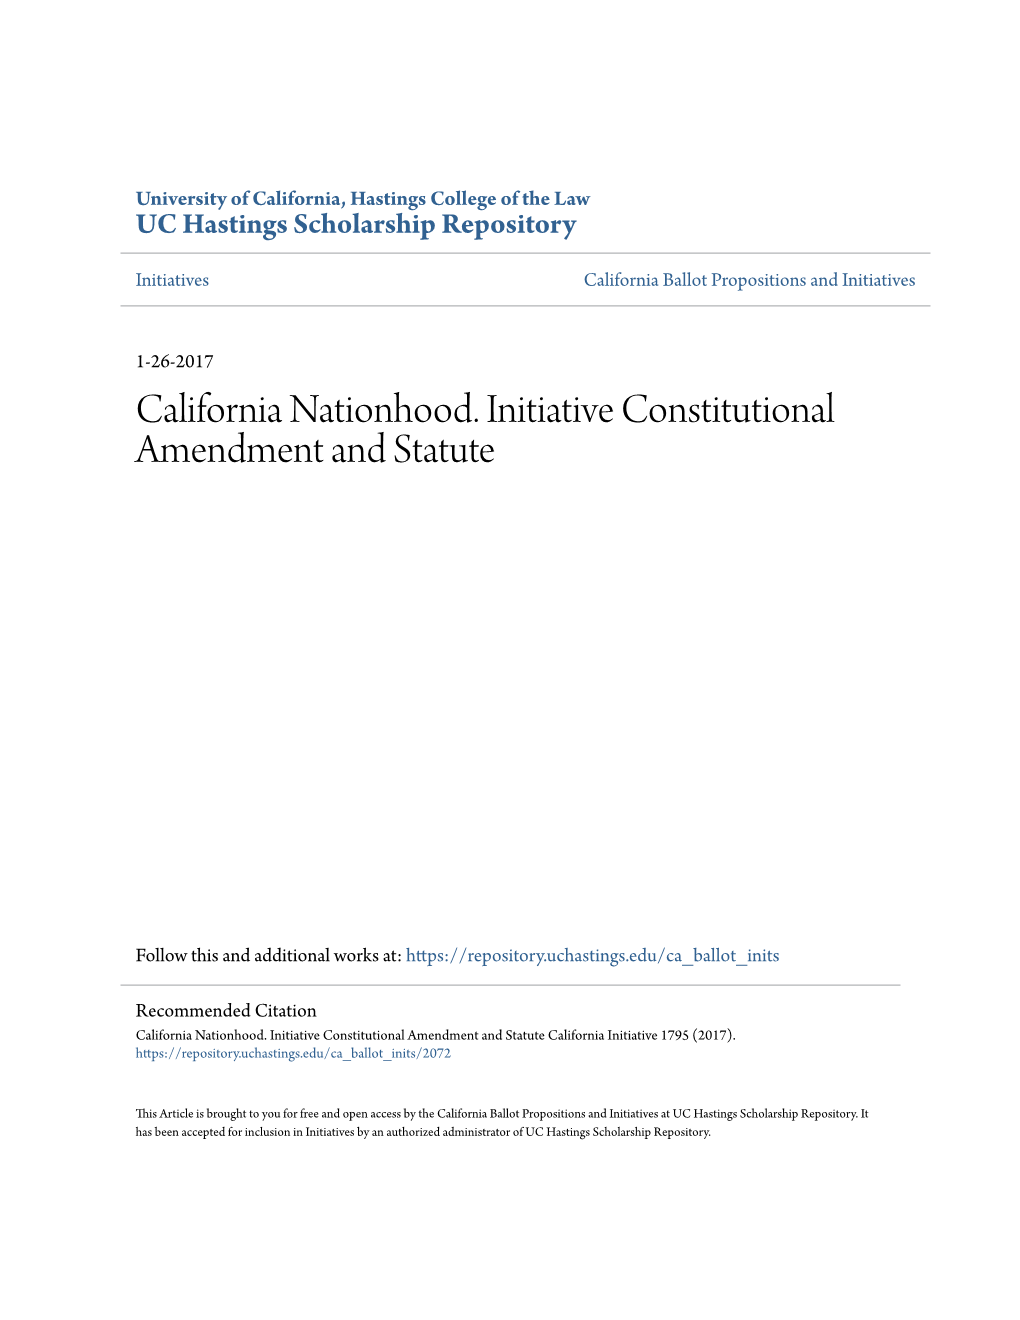 California Nationhood. Initiative Constitutional Amendment and Statute